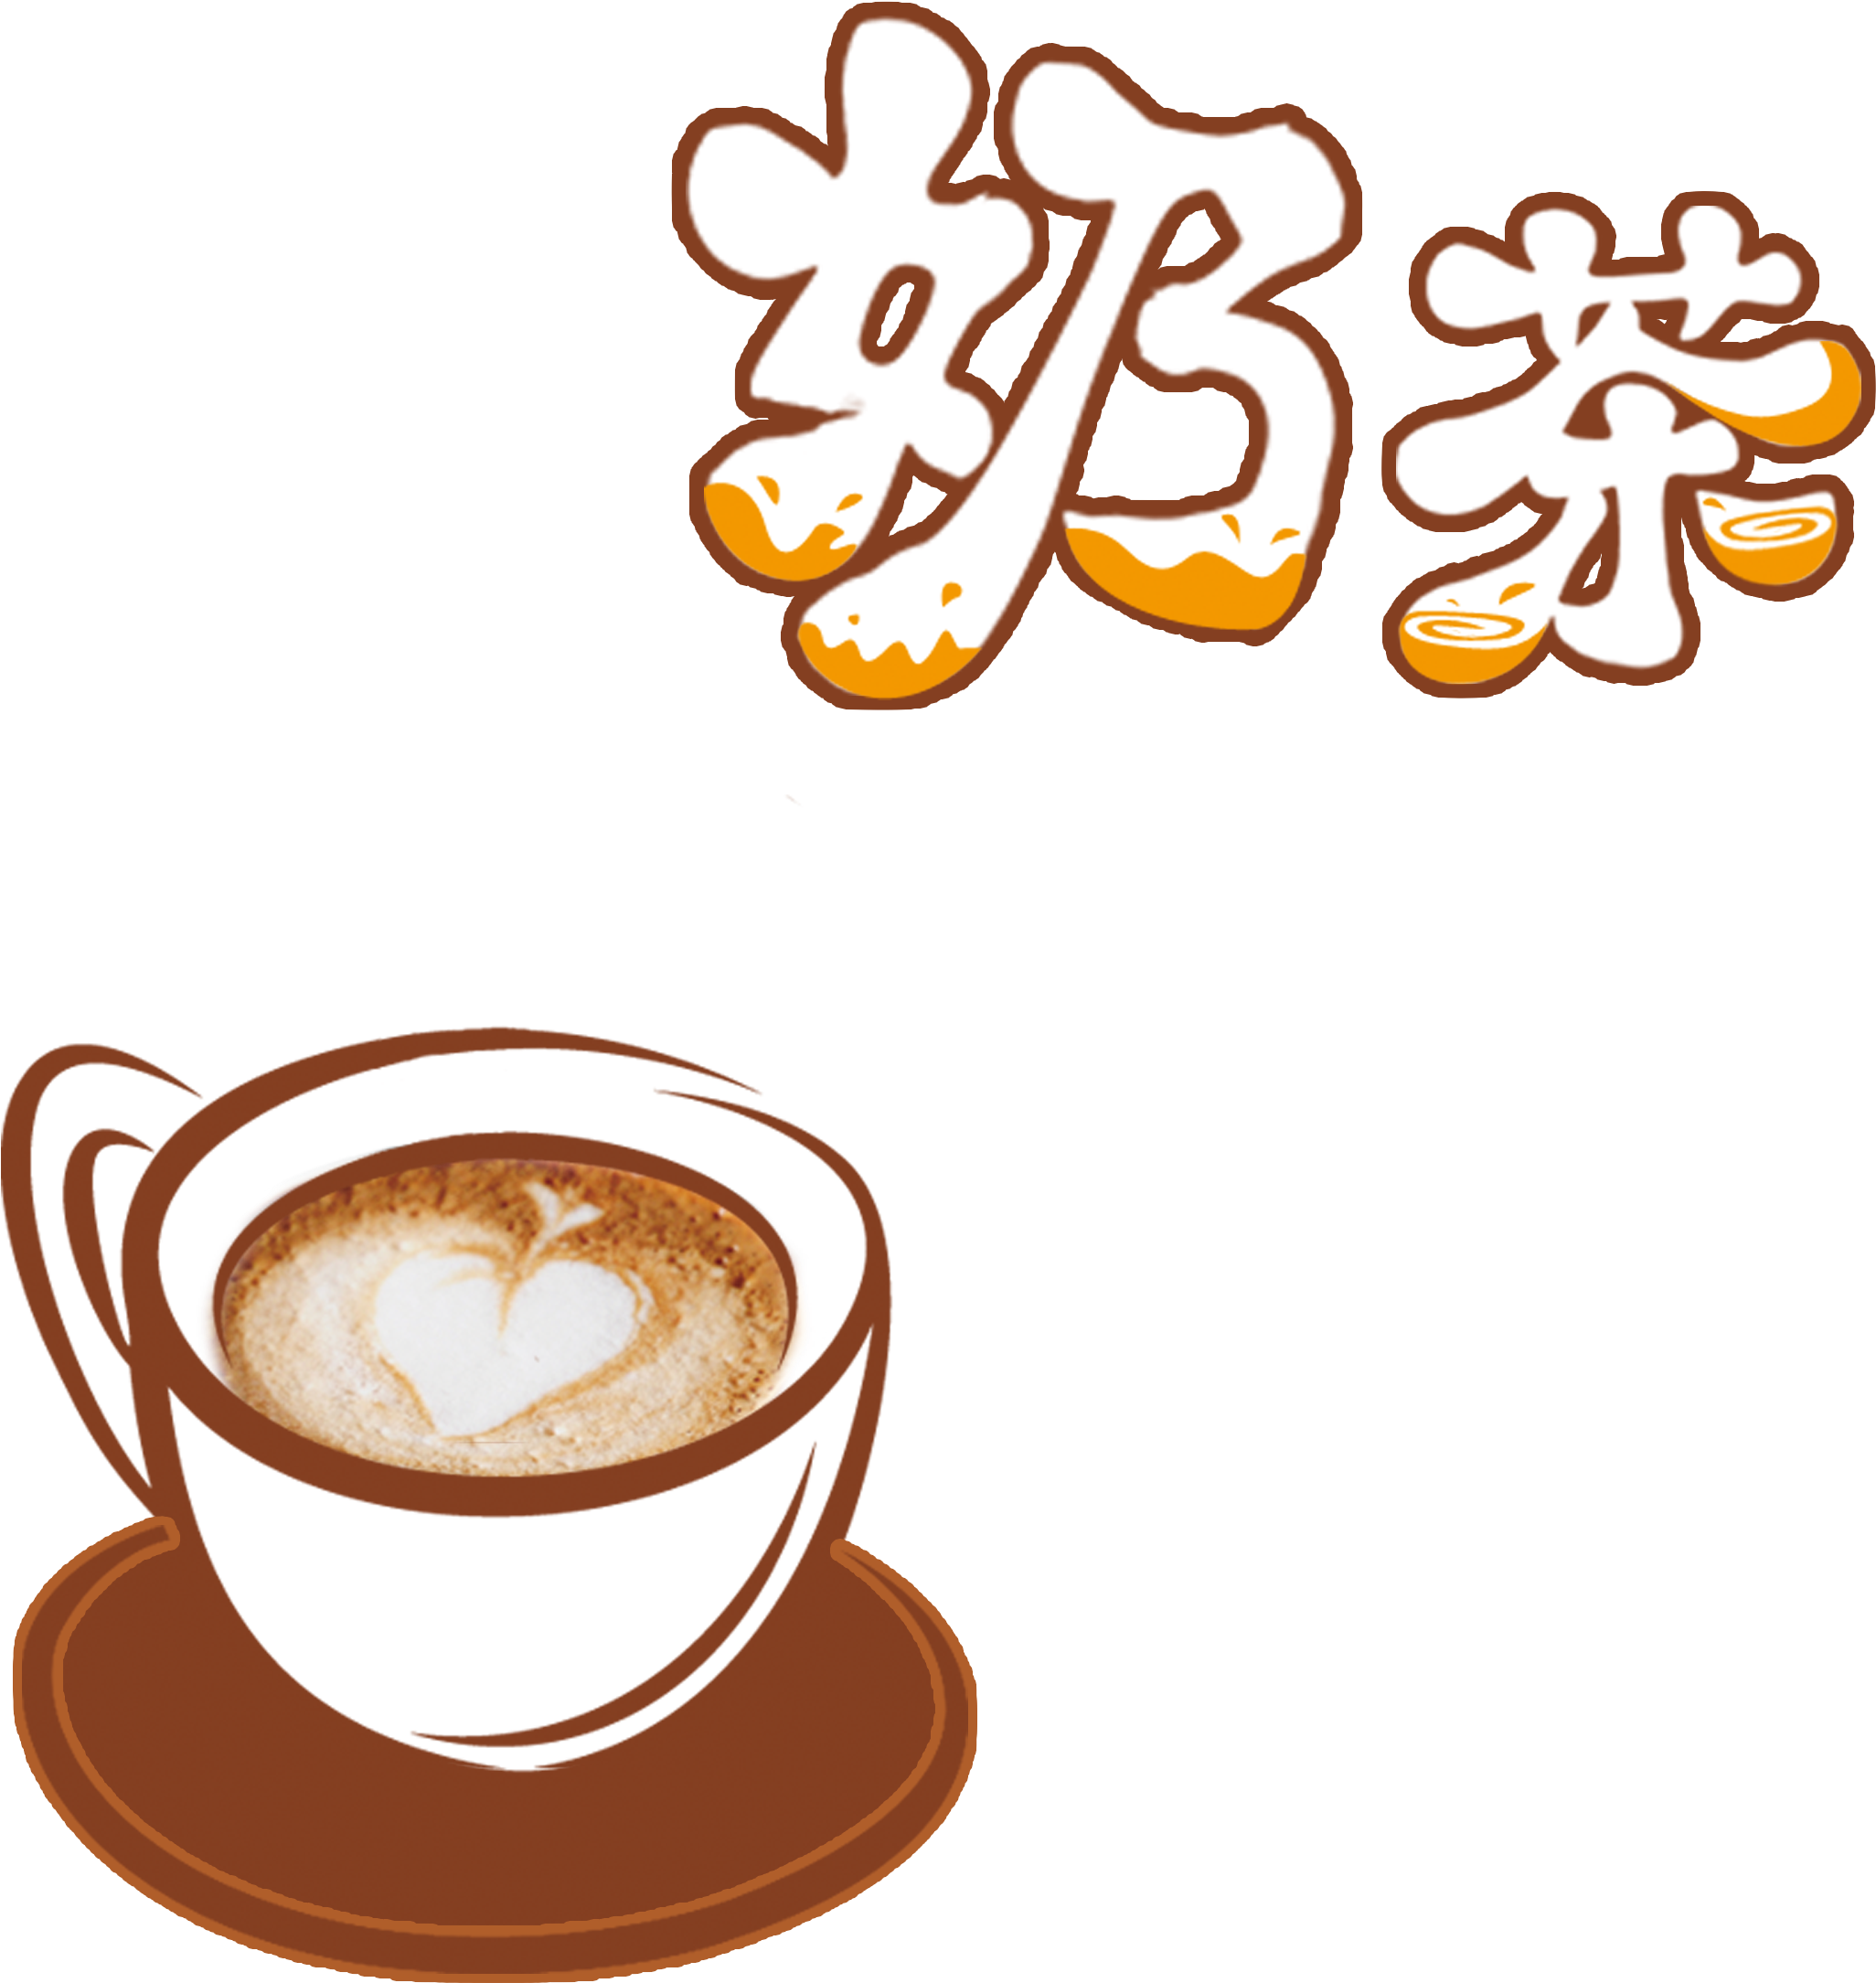 Cappuccino Hong Kong-style Milk Tea Coffee - Cappuccino Hong Kong-style Milk Tea Coffee (2362x2362)